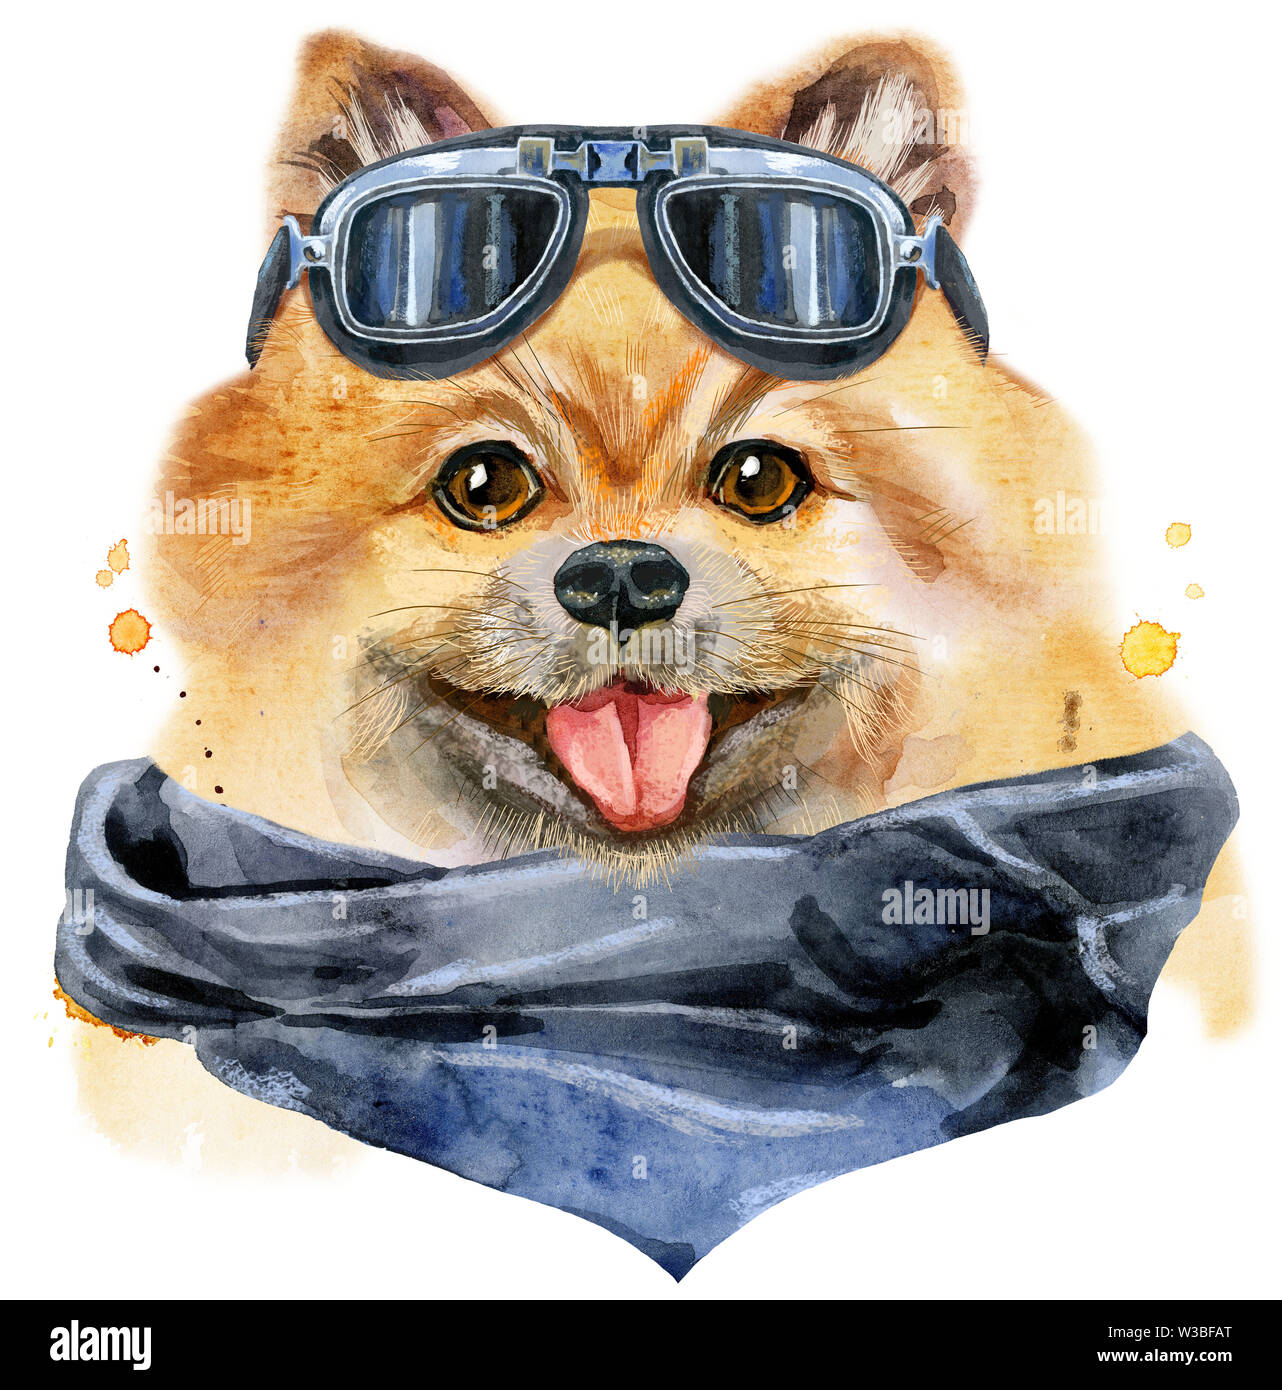 Aquarelle portrait de chien spitz pomeranian avec lunettes biker Banque D'Images